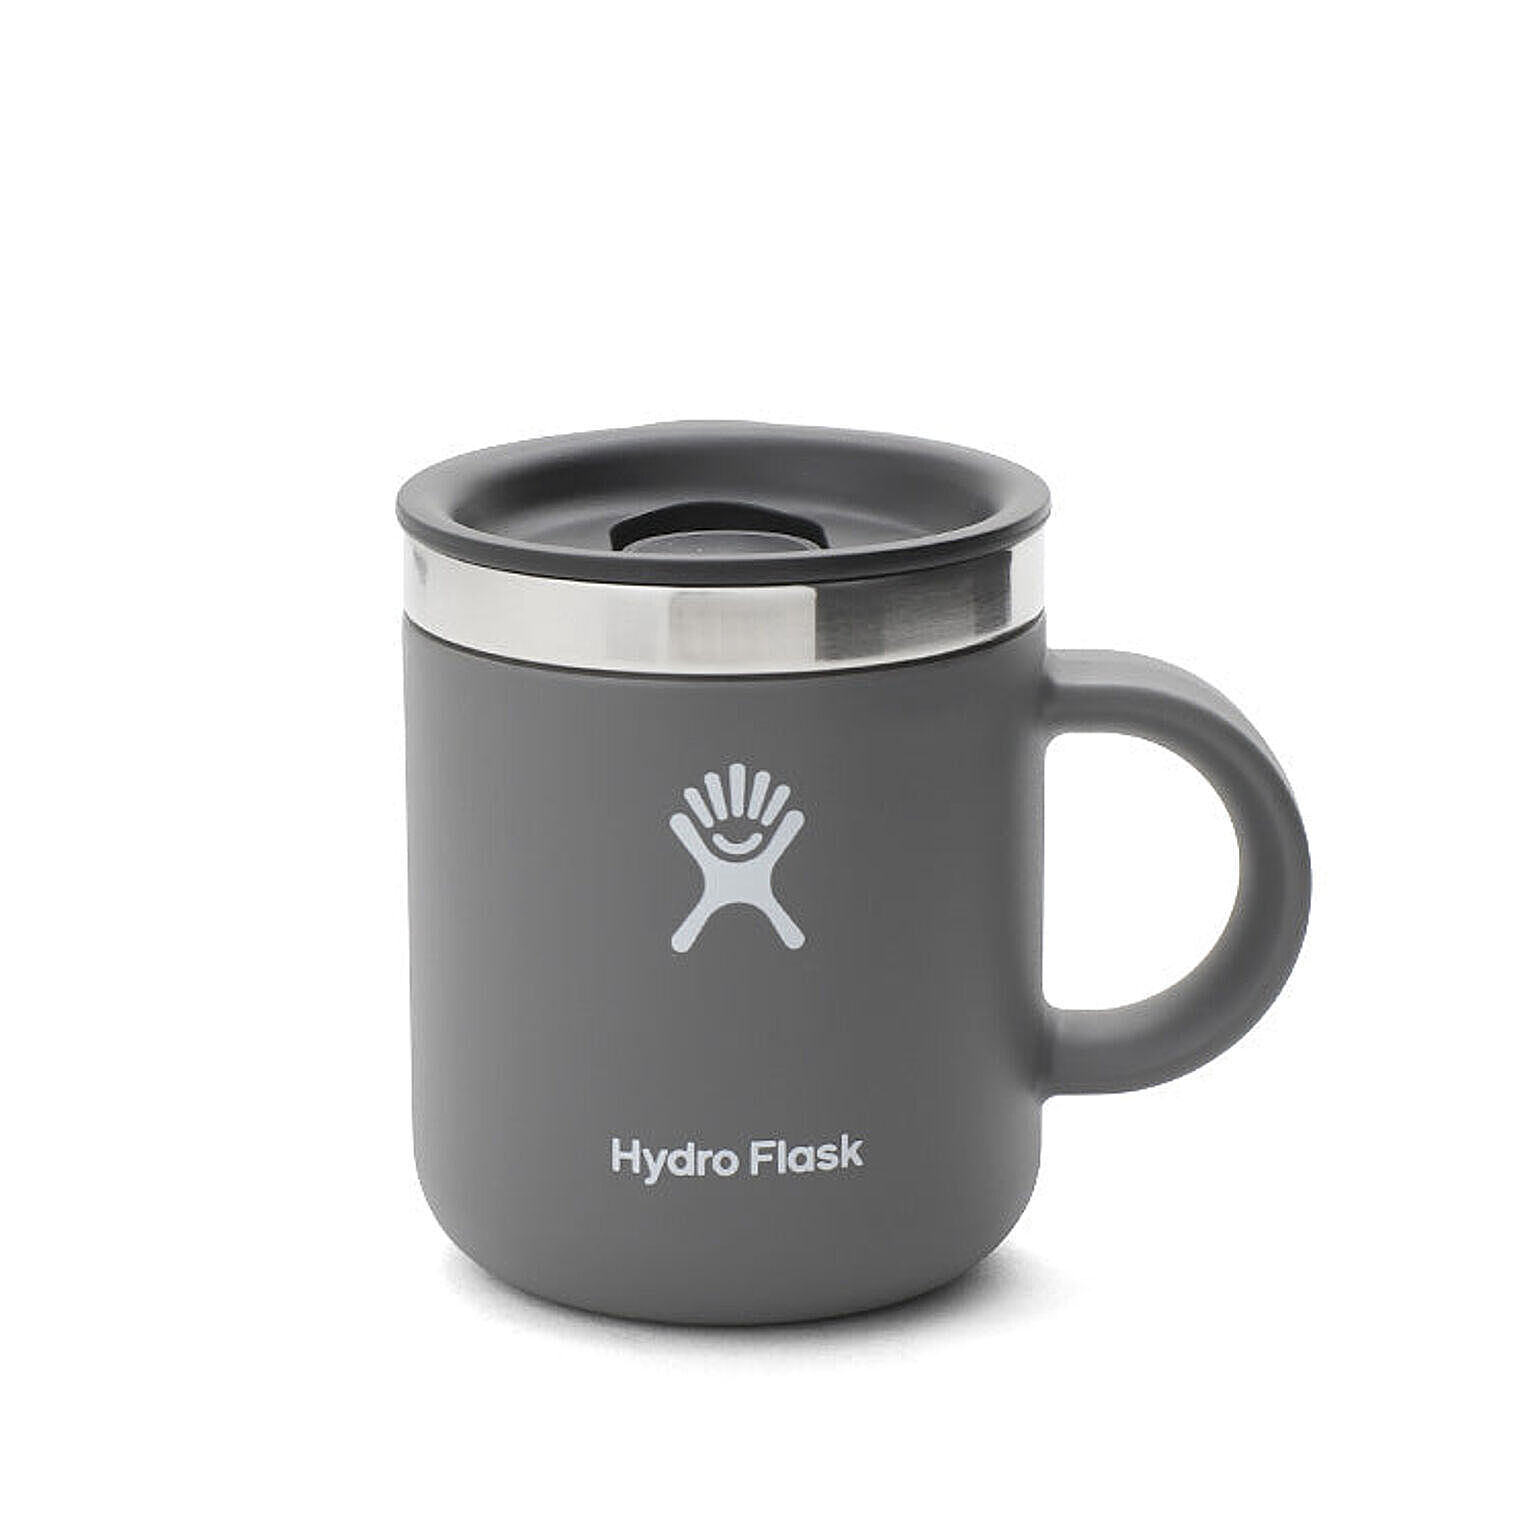 ハイドロフラスク クローザブル コーヒーマグ 6oz/177ml Hydro Flask Closeable Coffee Mug